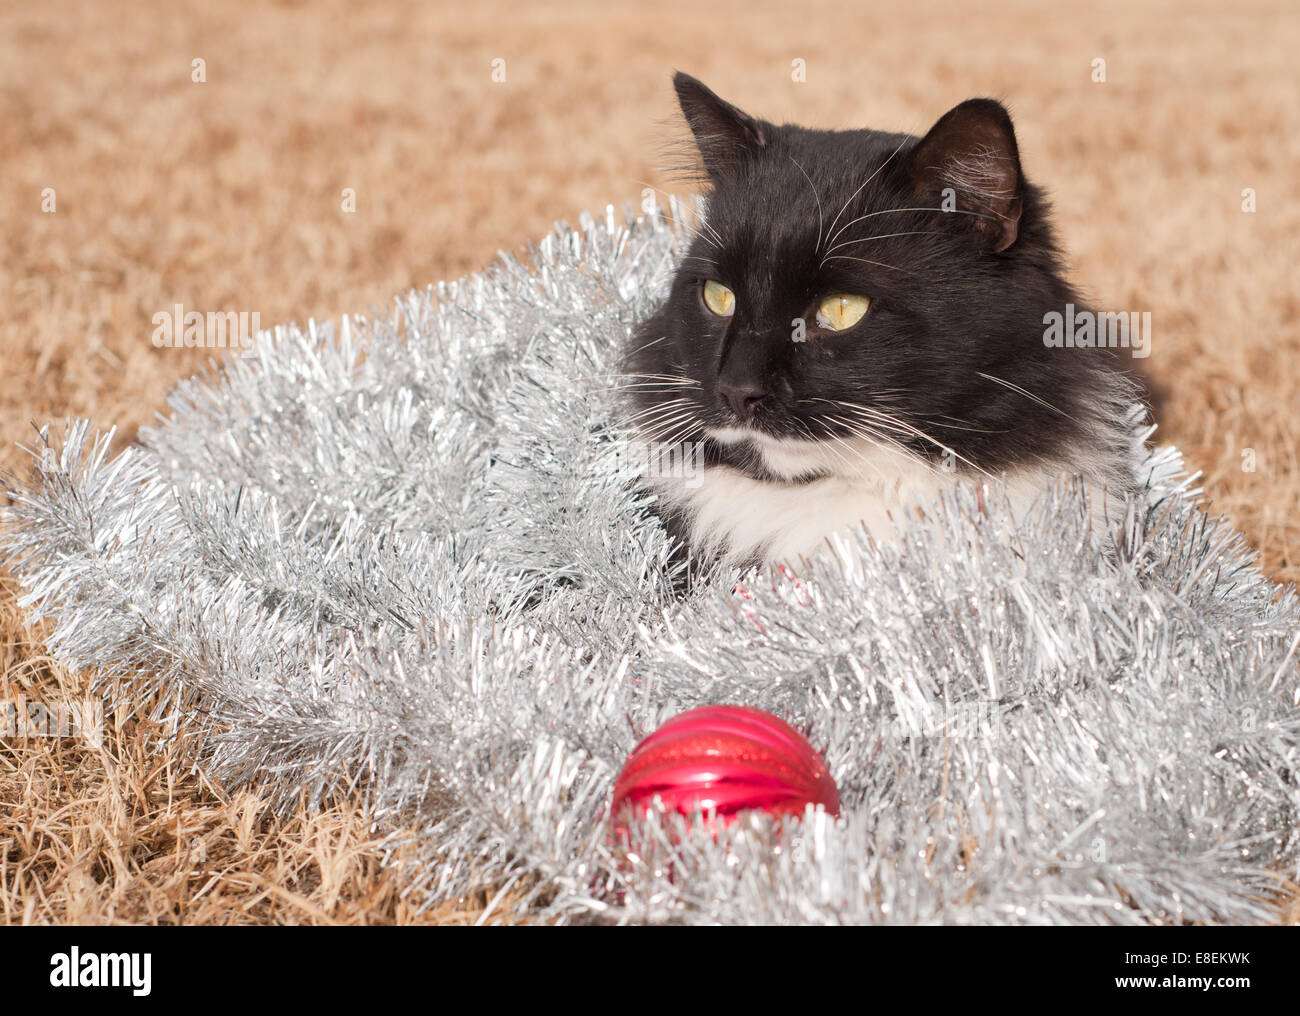 Beau chat noir et blanc recouvert de guirlandes d'argent - a Christmas kitty Banque D'Images